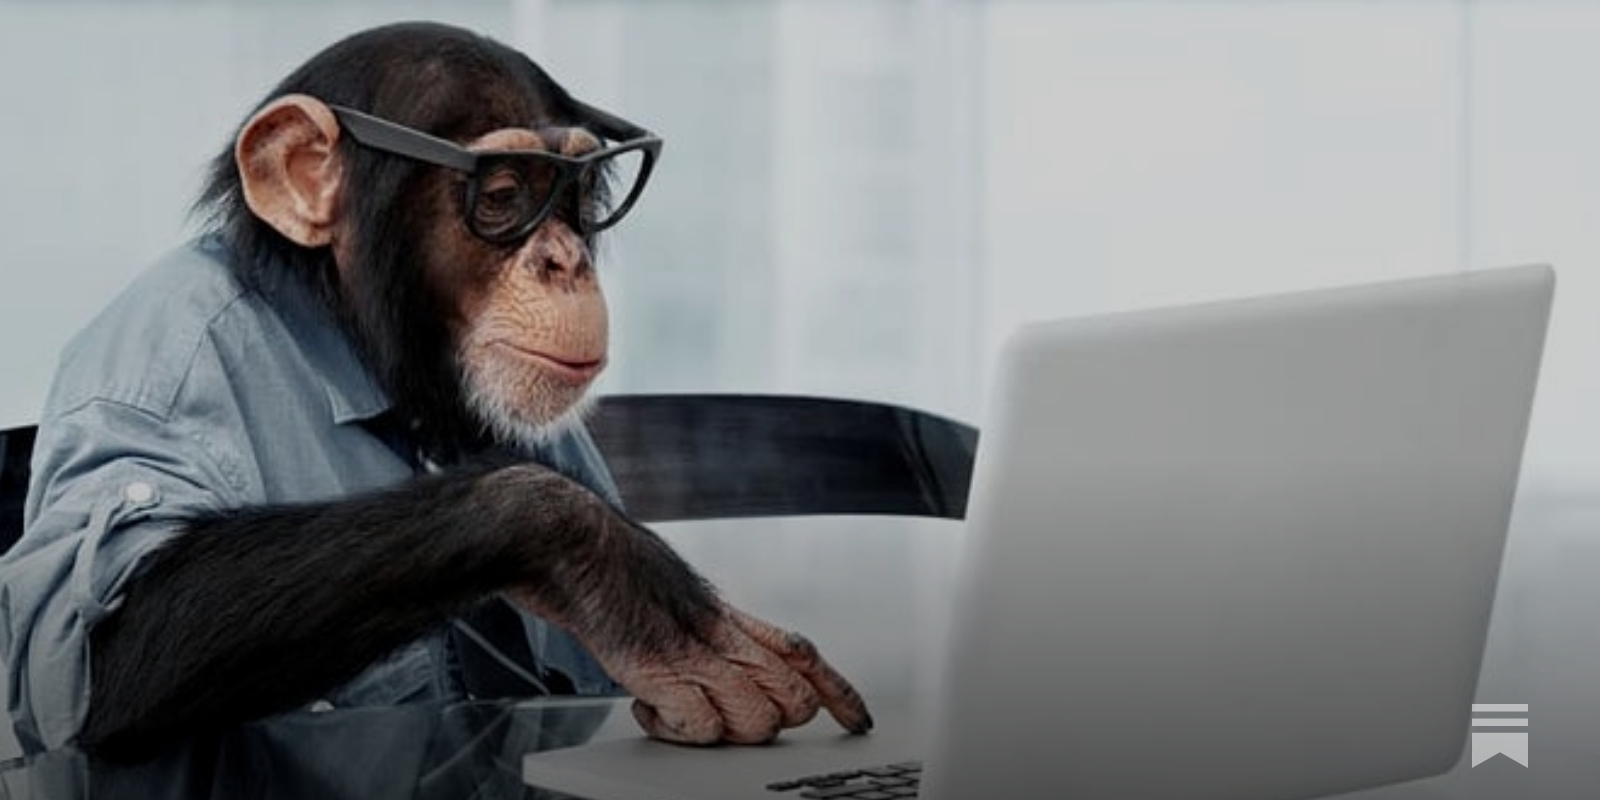 The Marketing Monkeys